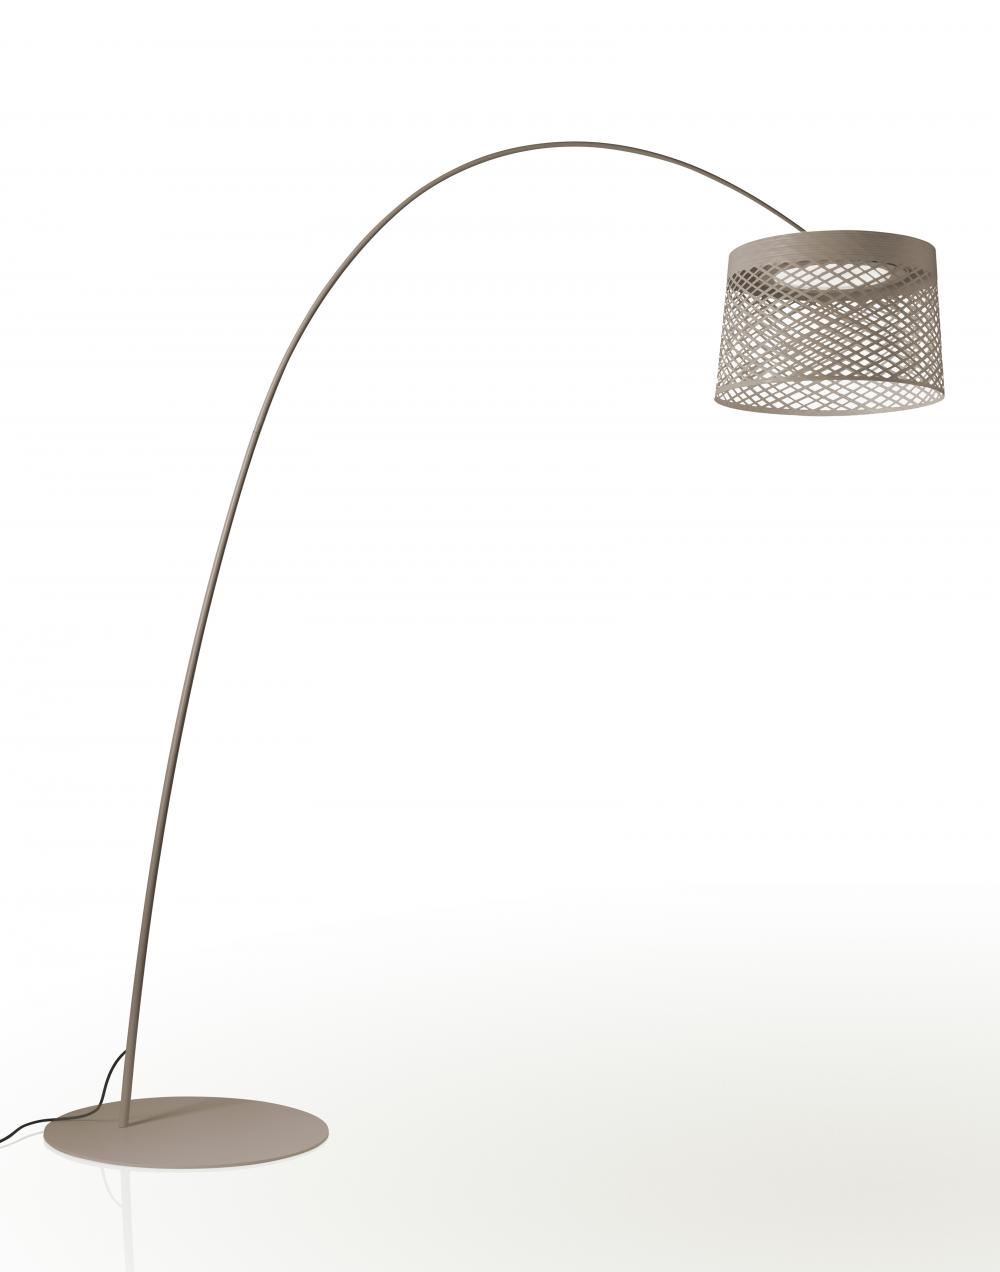 Foscarini Twiggy Grid Outdoor Floor Light Grey Outdoor Lighting Outdoor Lighting Designer Floor Lamp